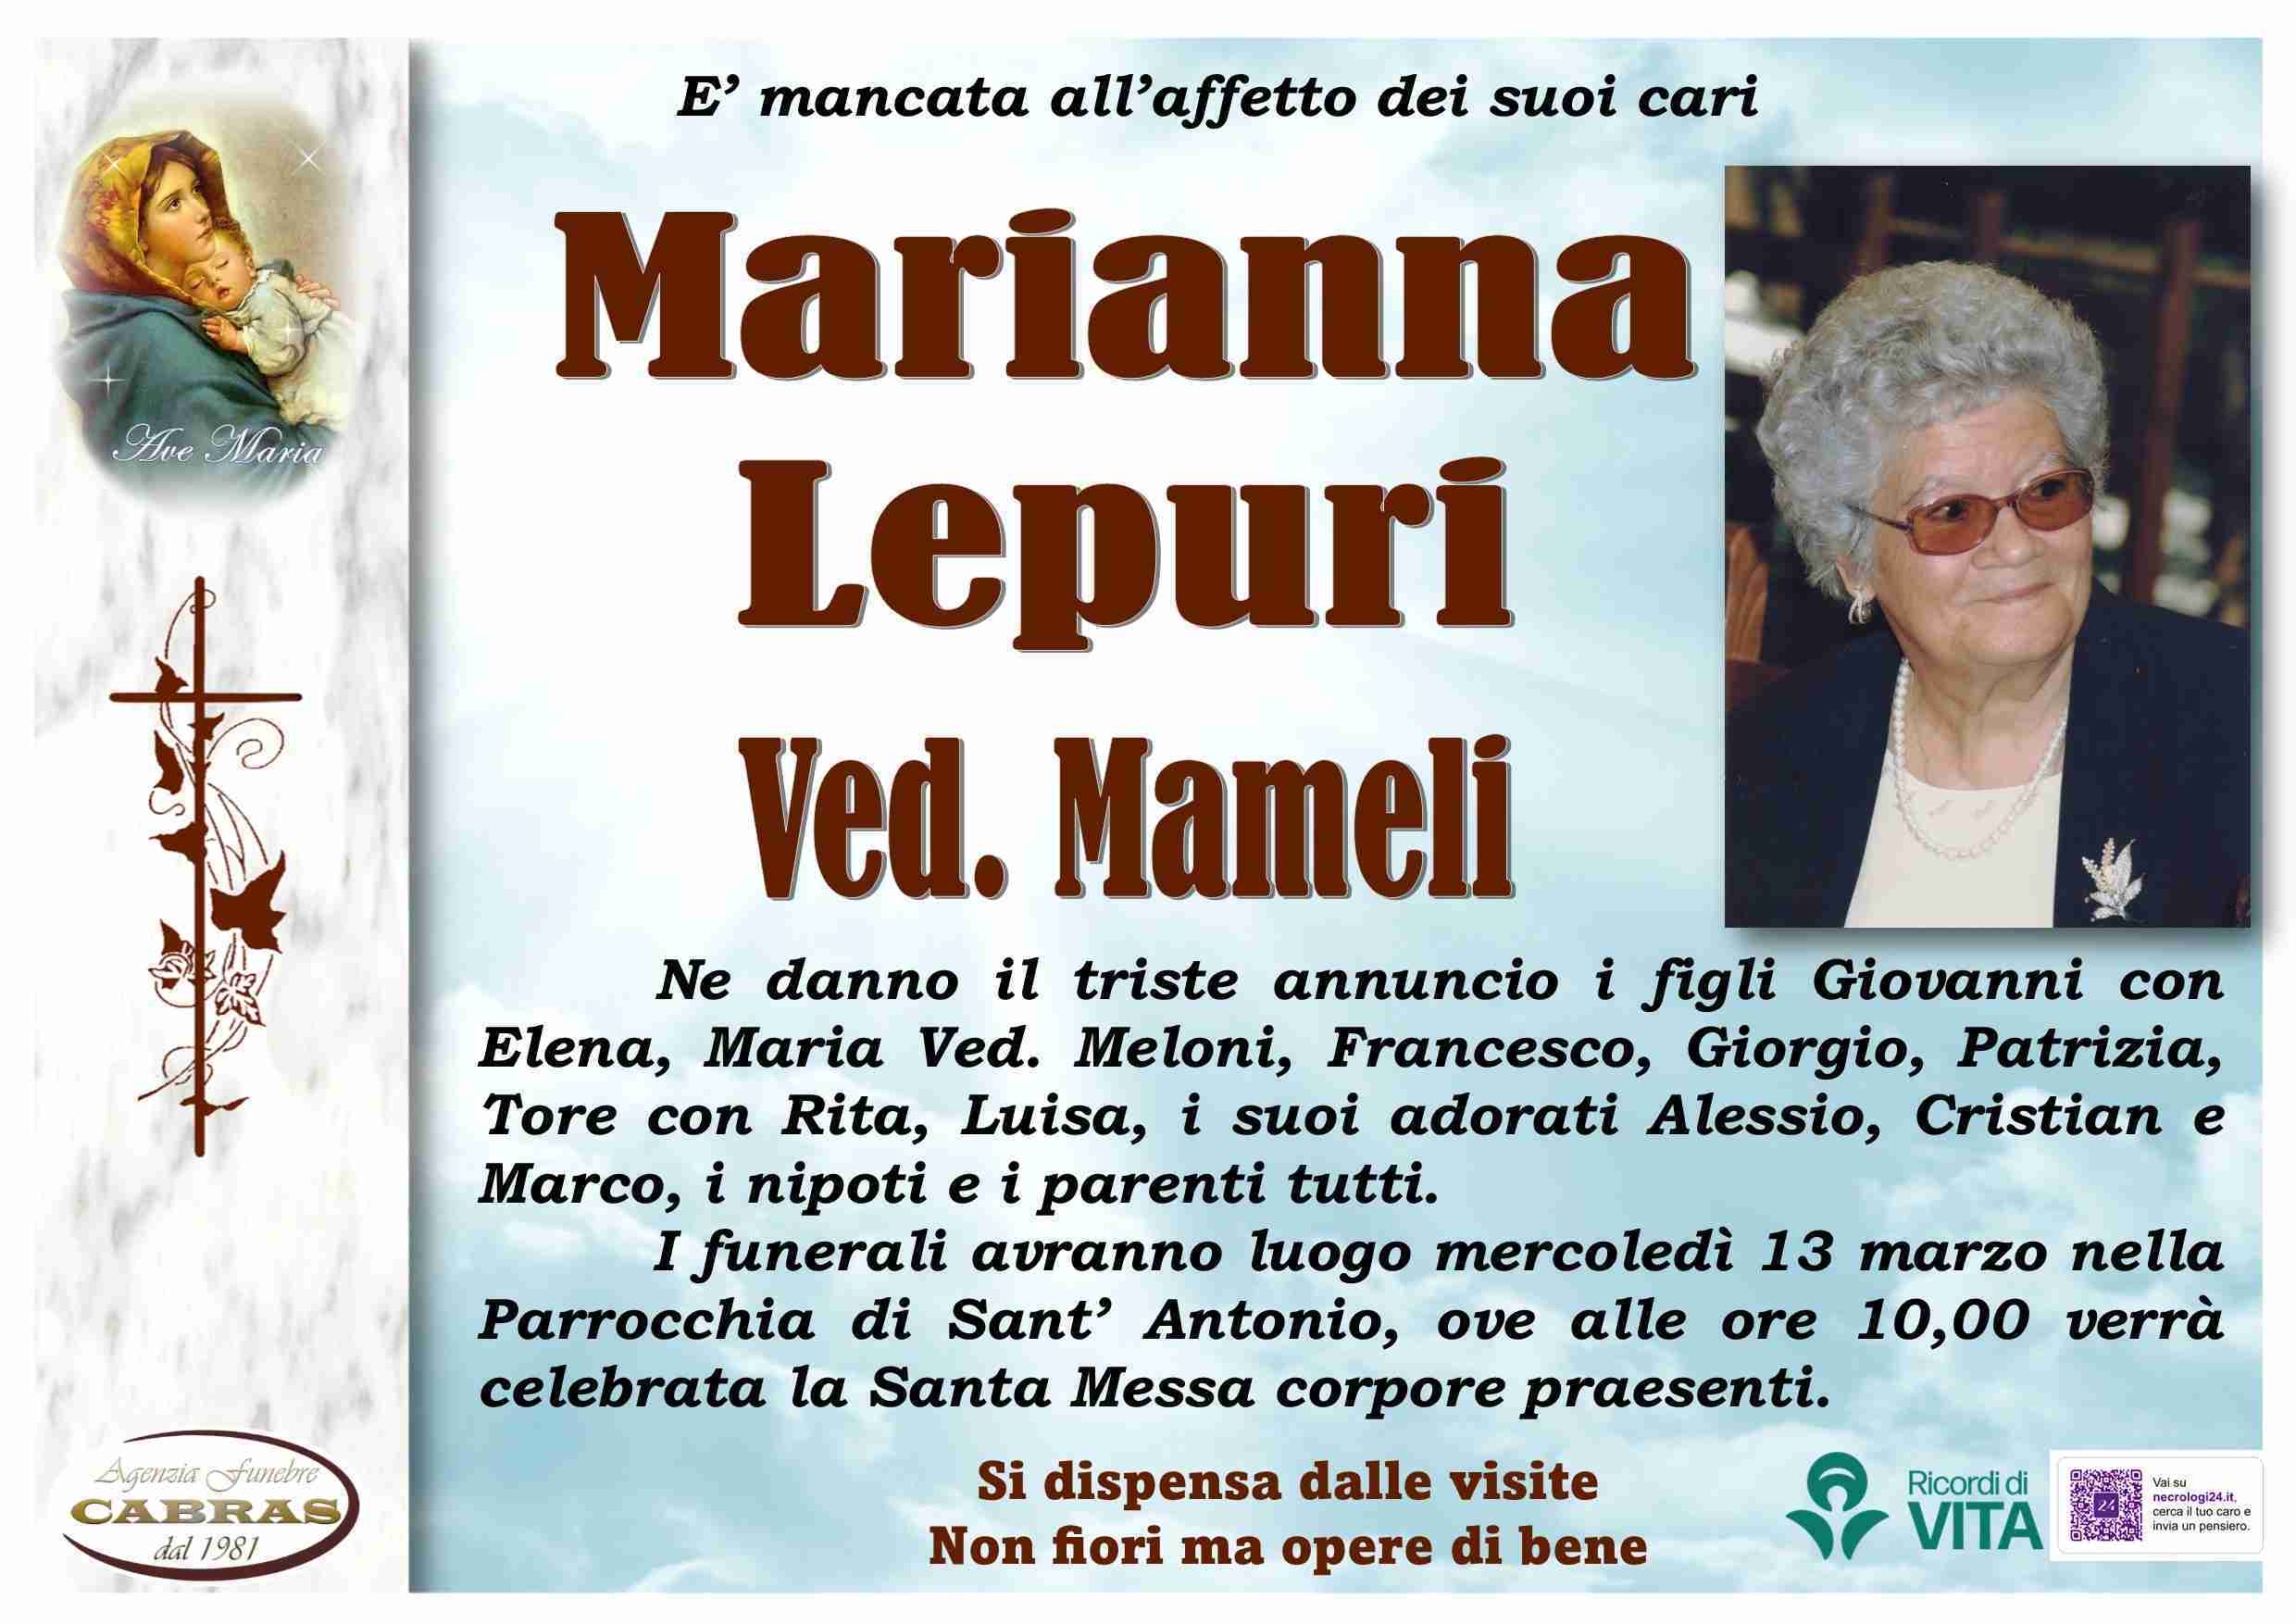 Marianna Lepuri